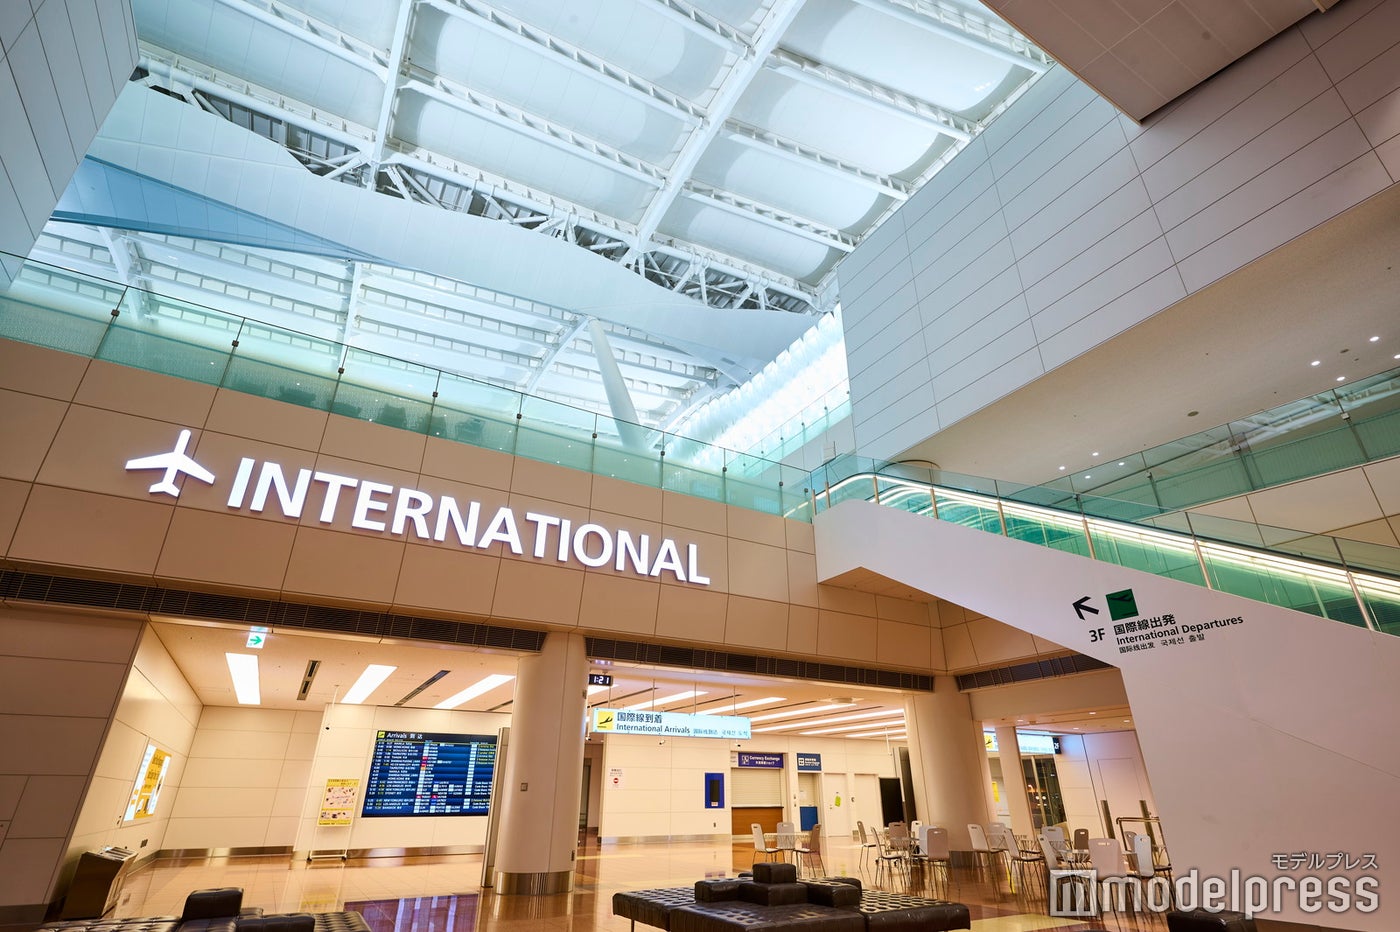 「INTERNATIONAL」の文字を目印に昇りエスカレーターで国際線エリアへ（C）モデルプレス